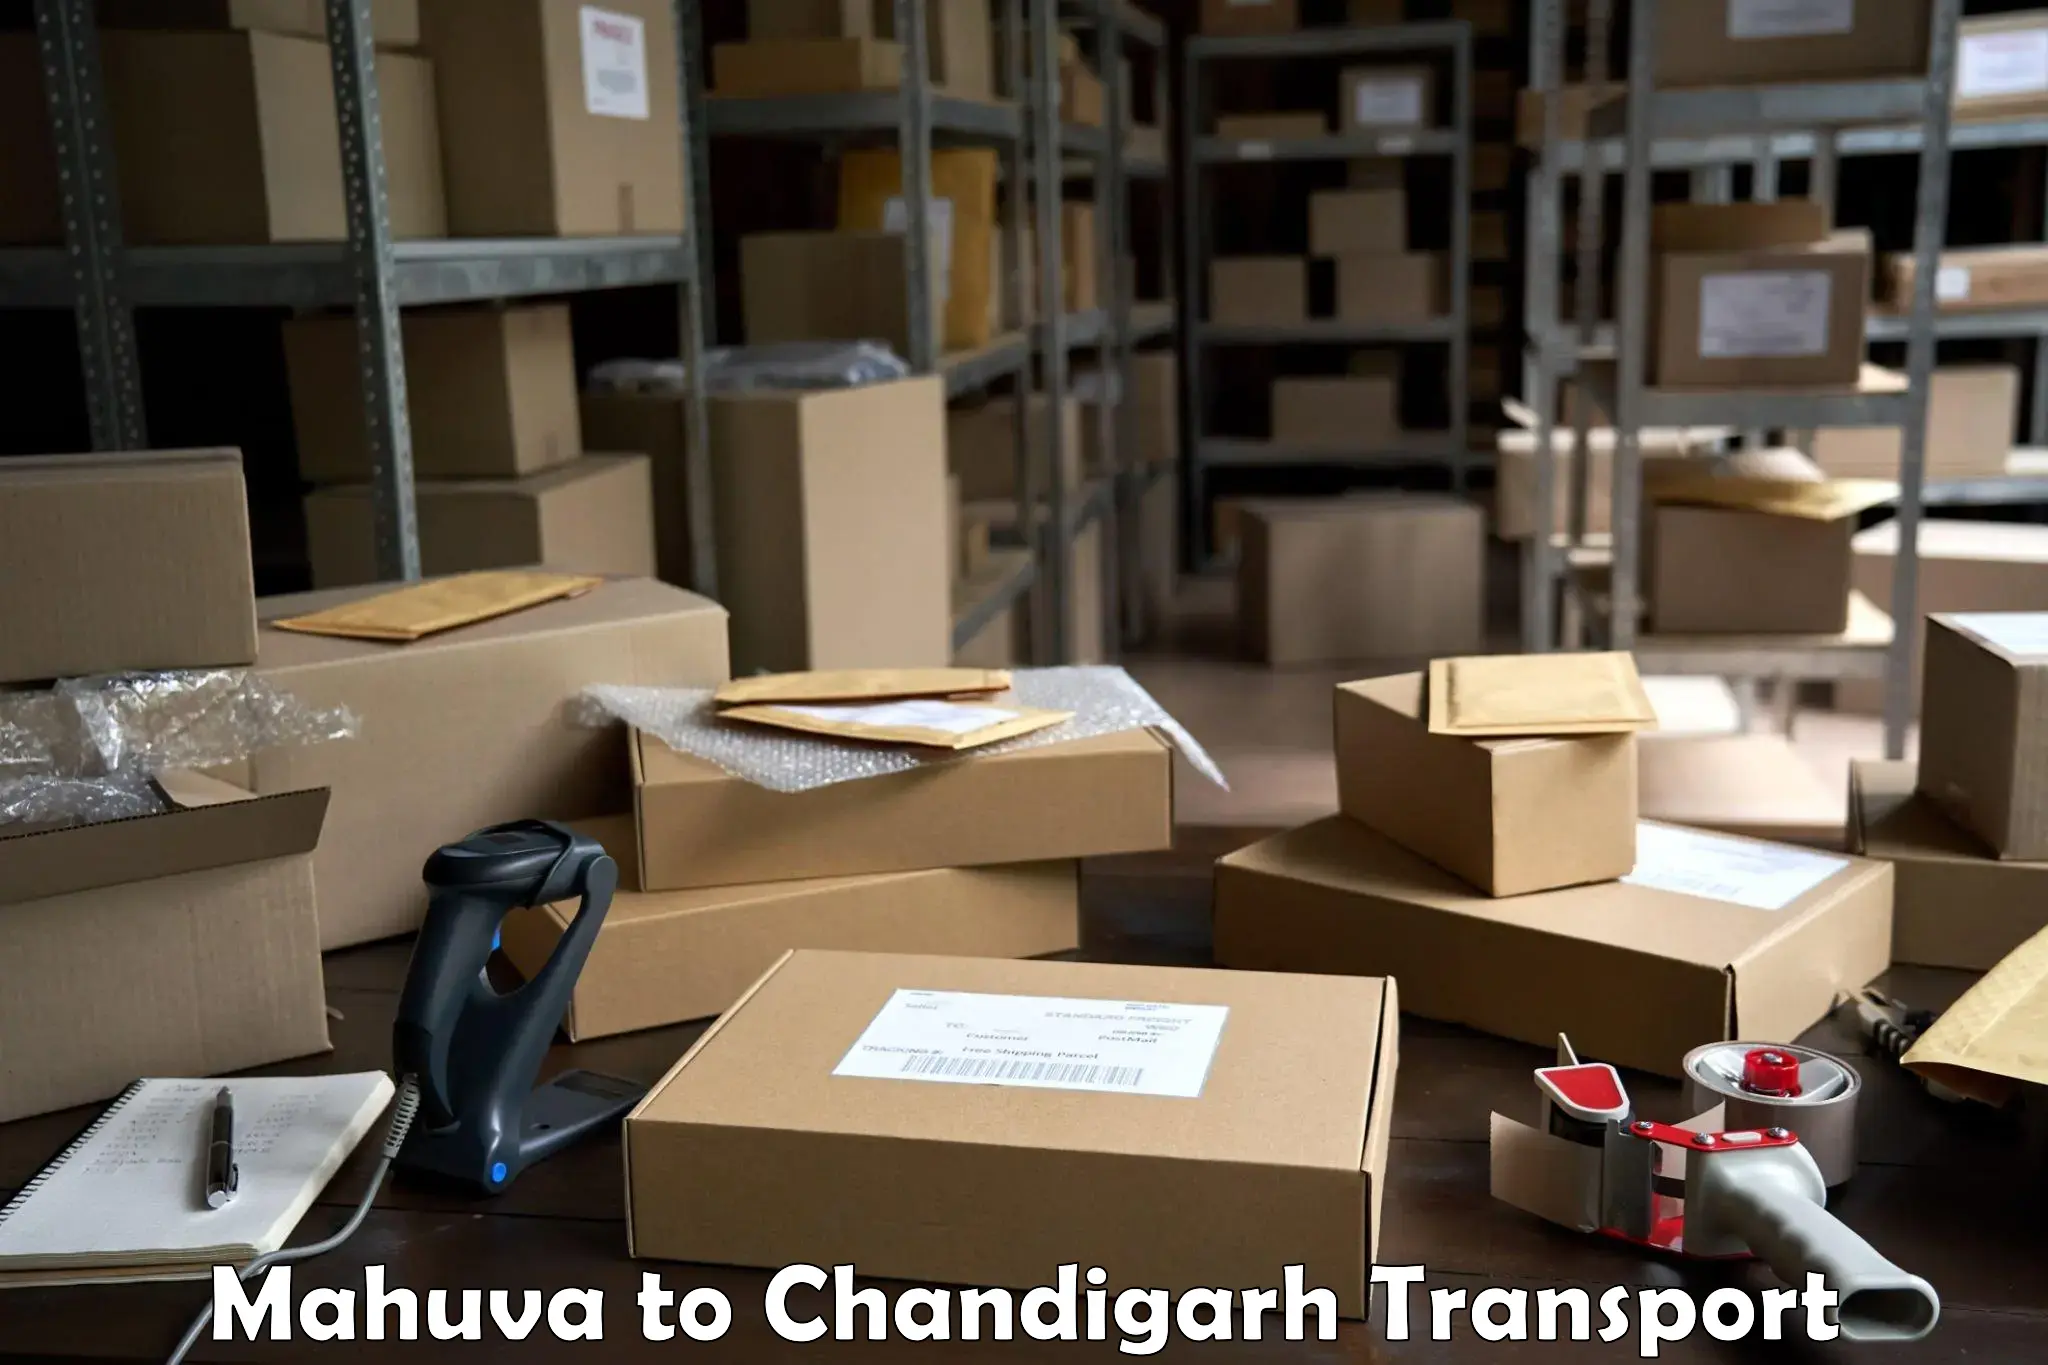 Truck transport companies in India Mahuva to Chandigarh